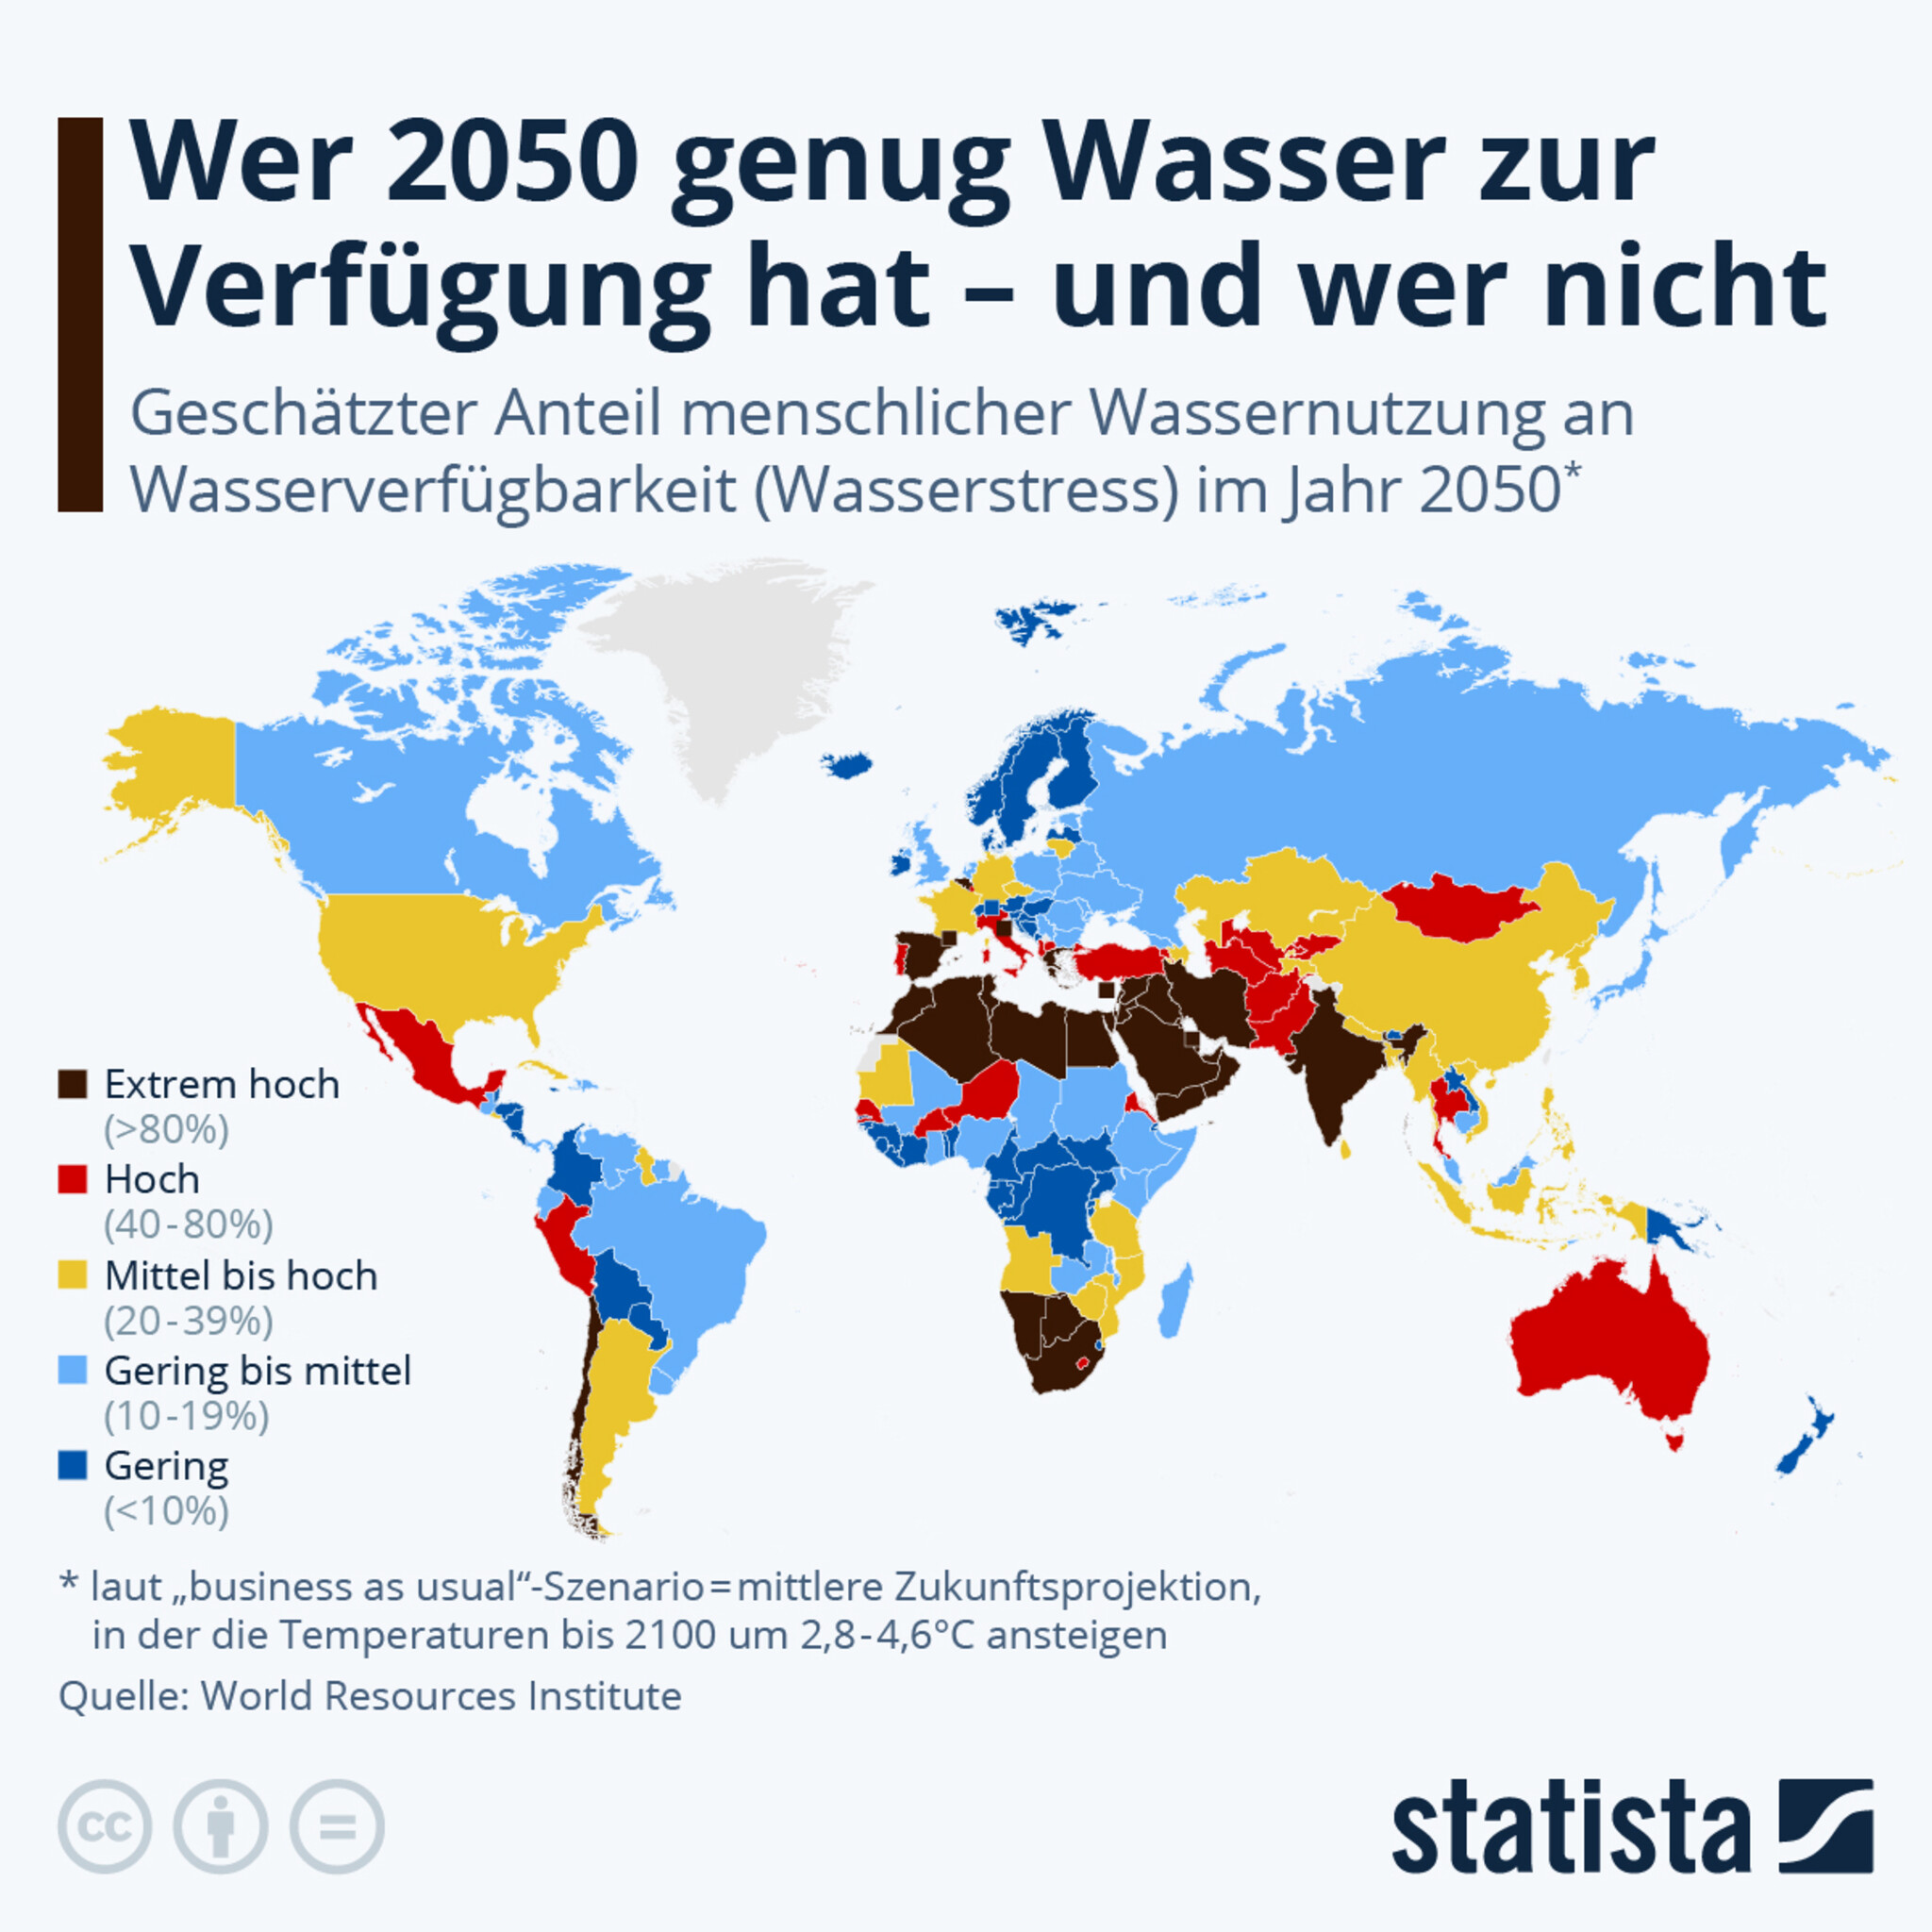 Statistik über geschätzte Wasserverfügbarkeit für Menschen im Jahr 2050 weltweit